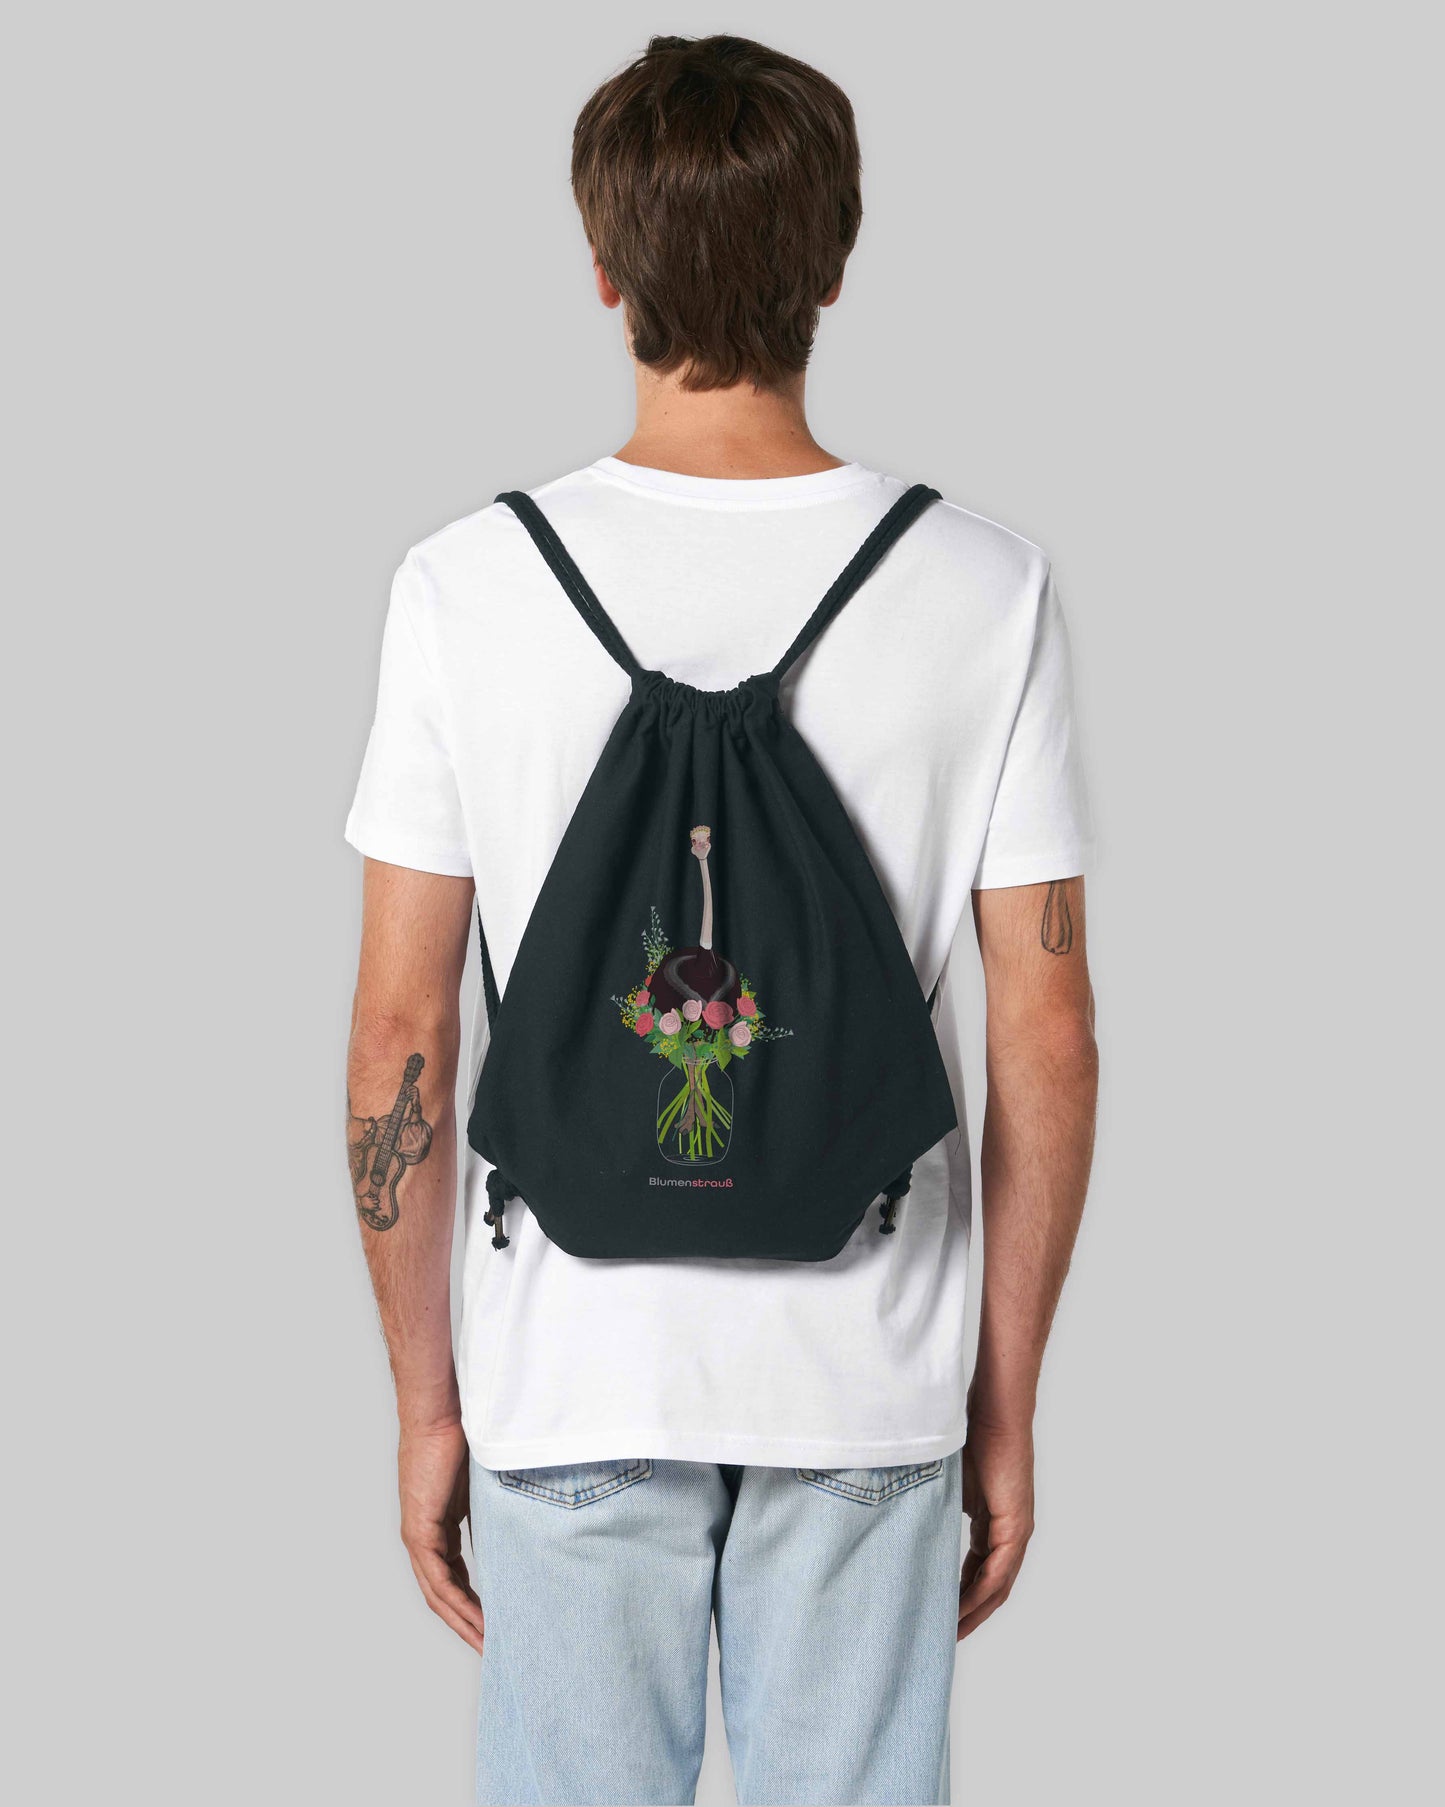 EINHORST® Sportbeutel in Schwarz mit dem Motiv "Blumenstrauß", Bild von männlicher Person mit Sportbeutel von hinten